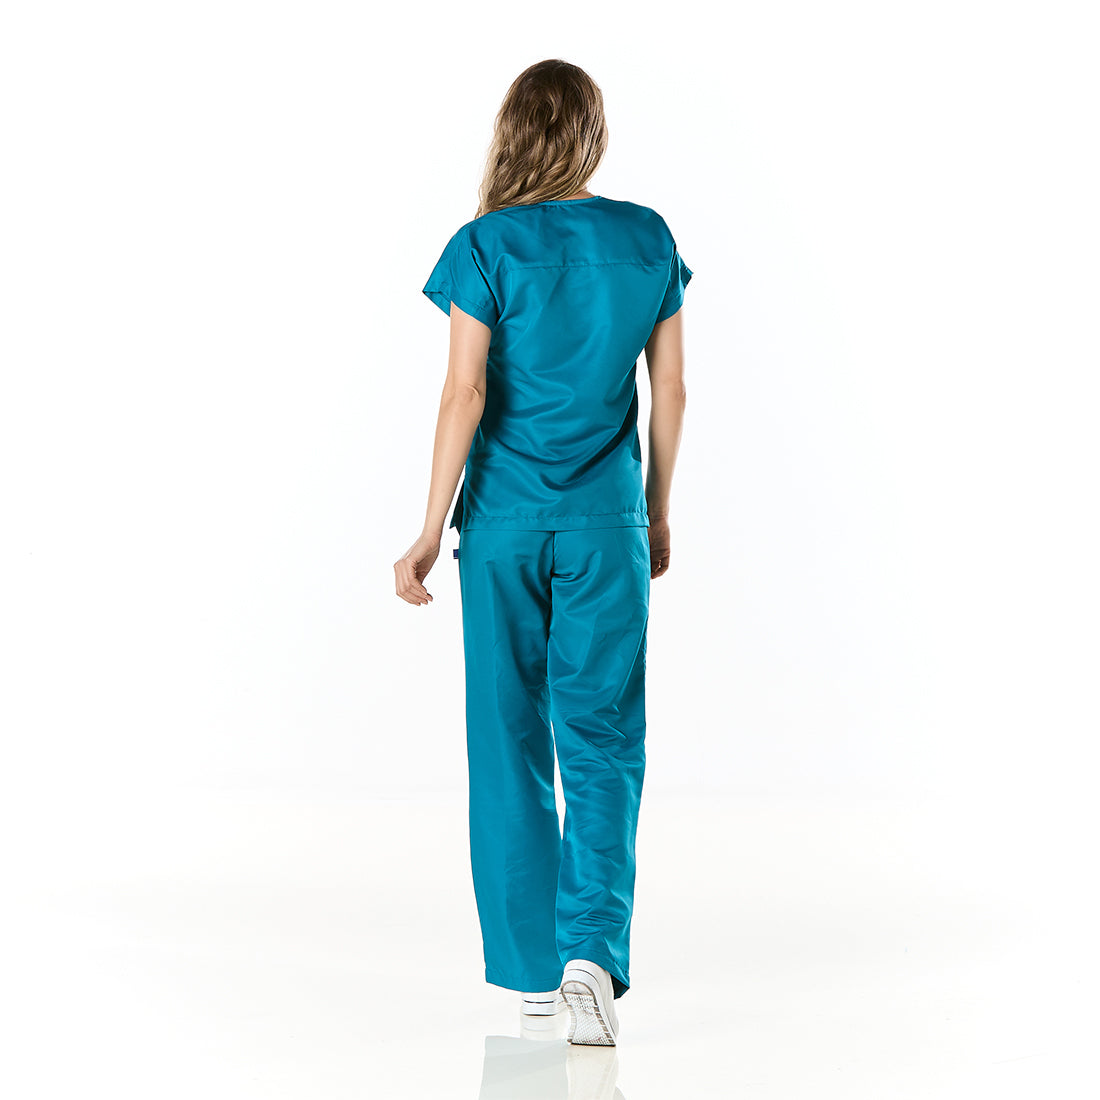 Mujer vistiendo pijama sanitario azul con escote en v y pantalon recto - espalda